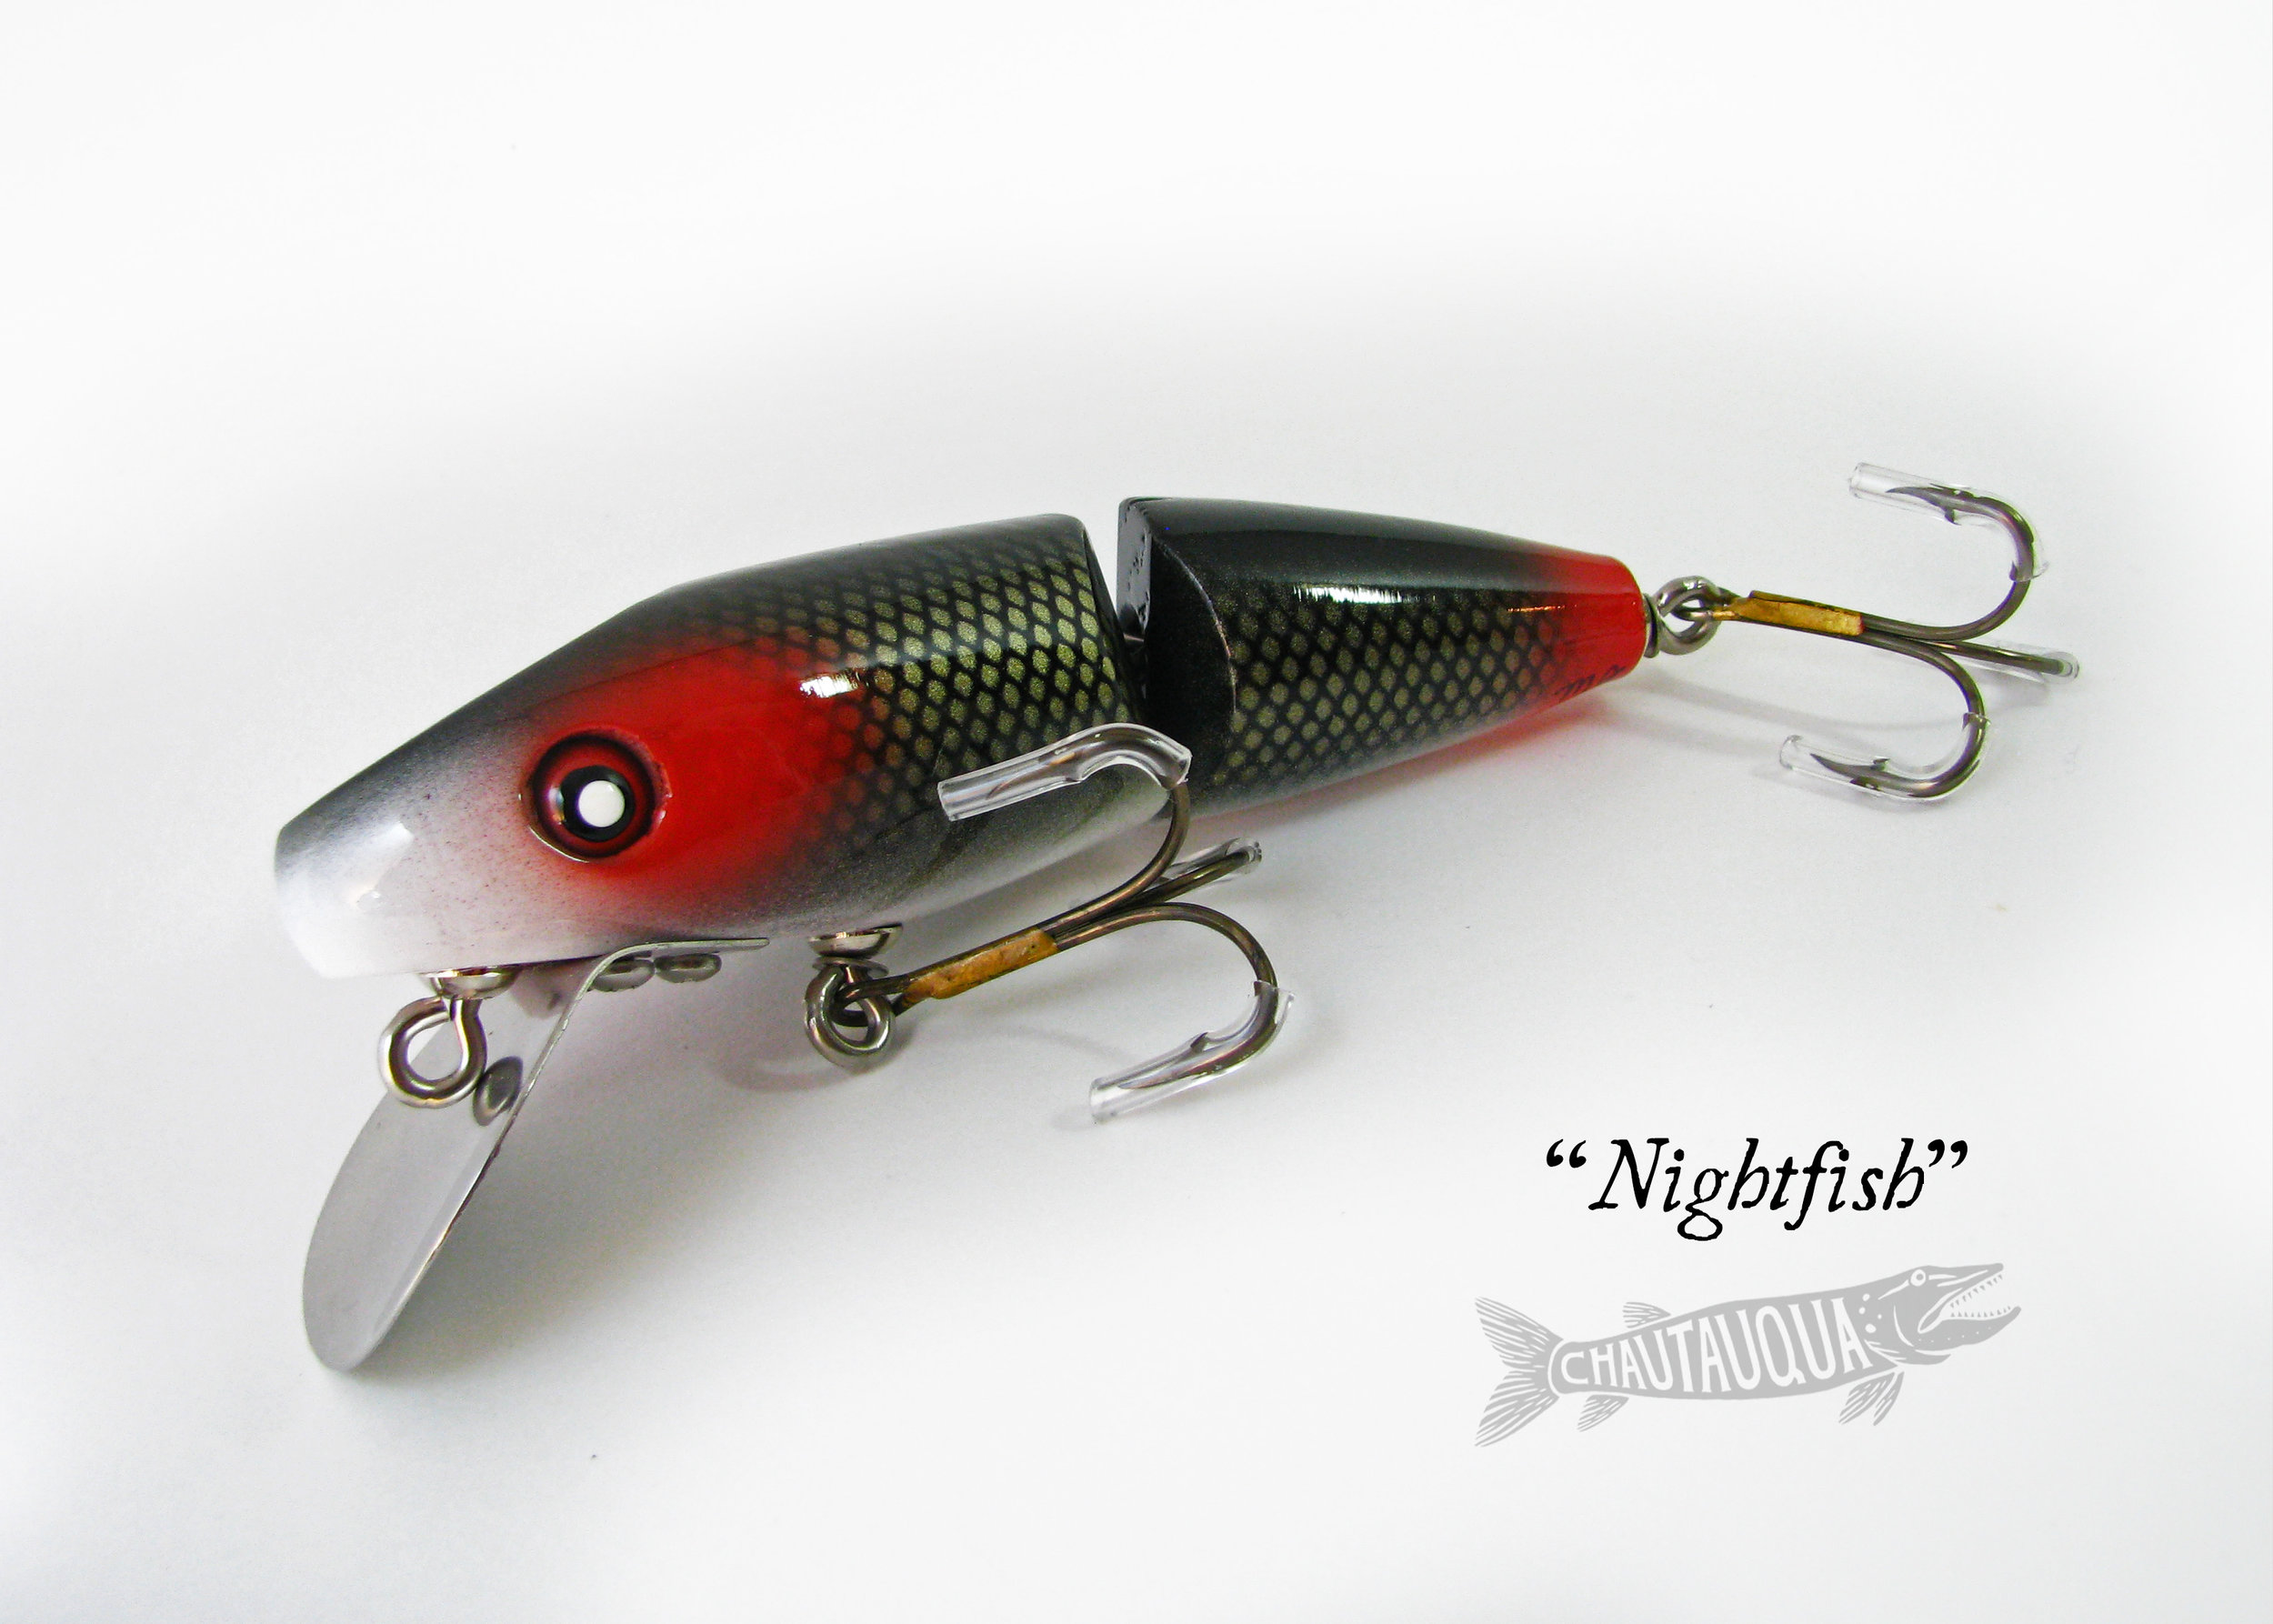 Nightfish_SS.jpg